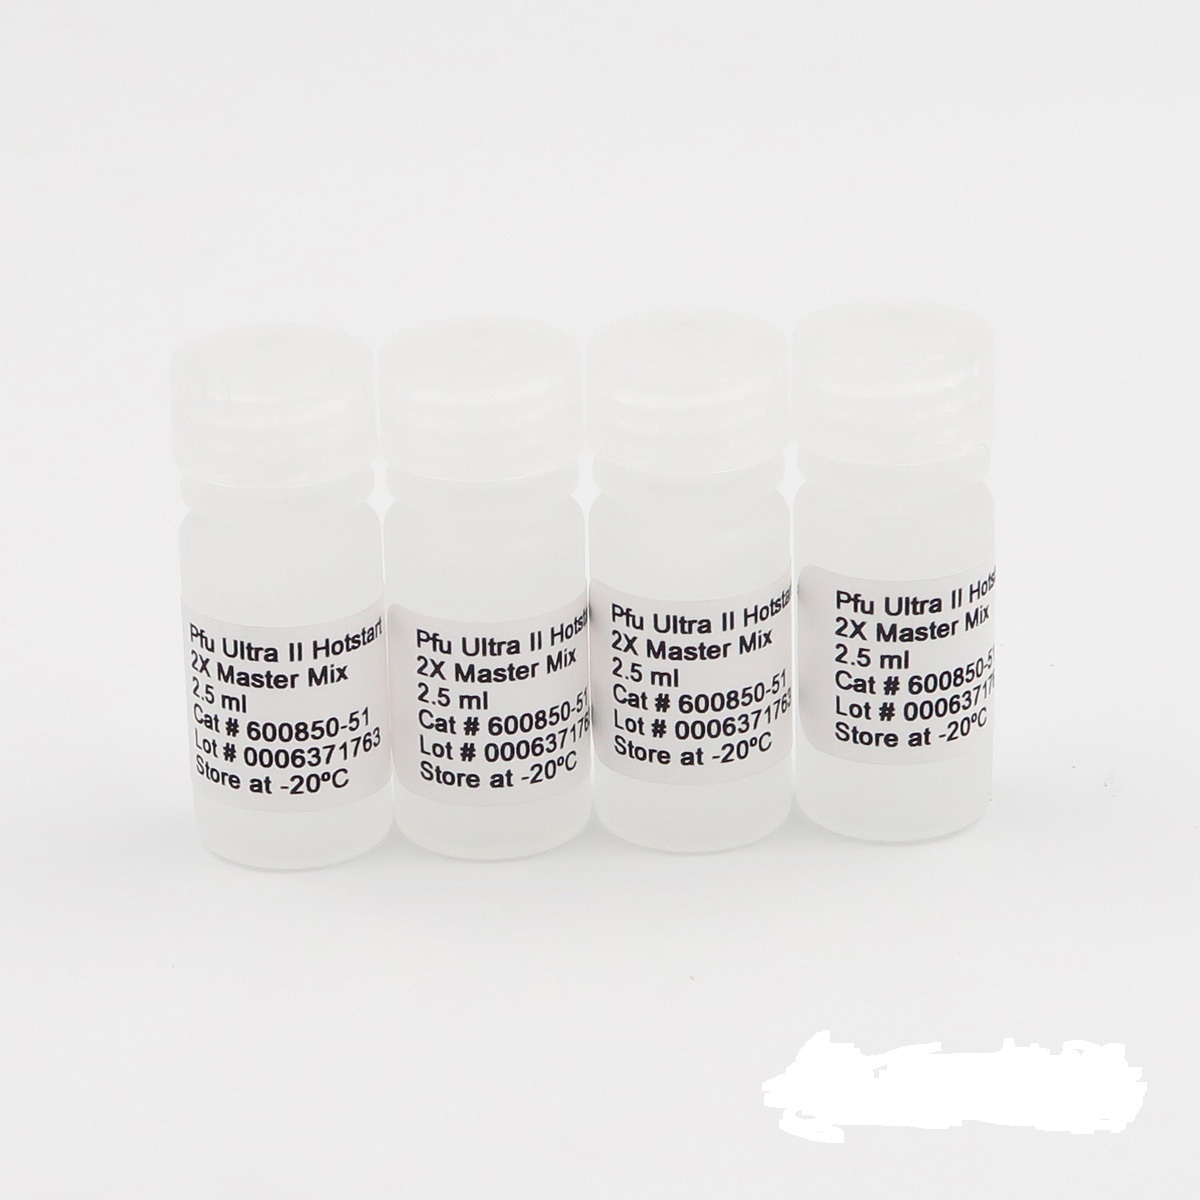 须毛癣菌染料法荧光定量PCR试剂盒